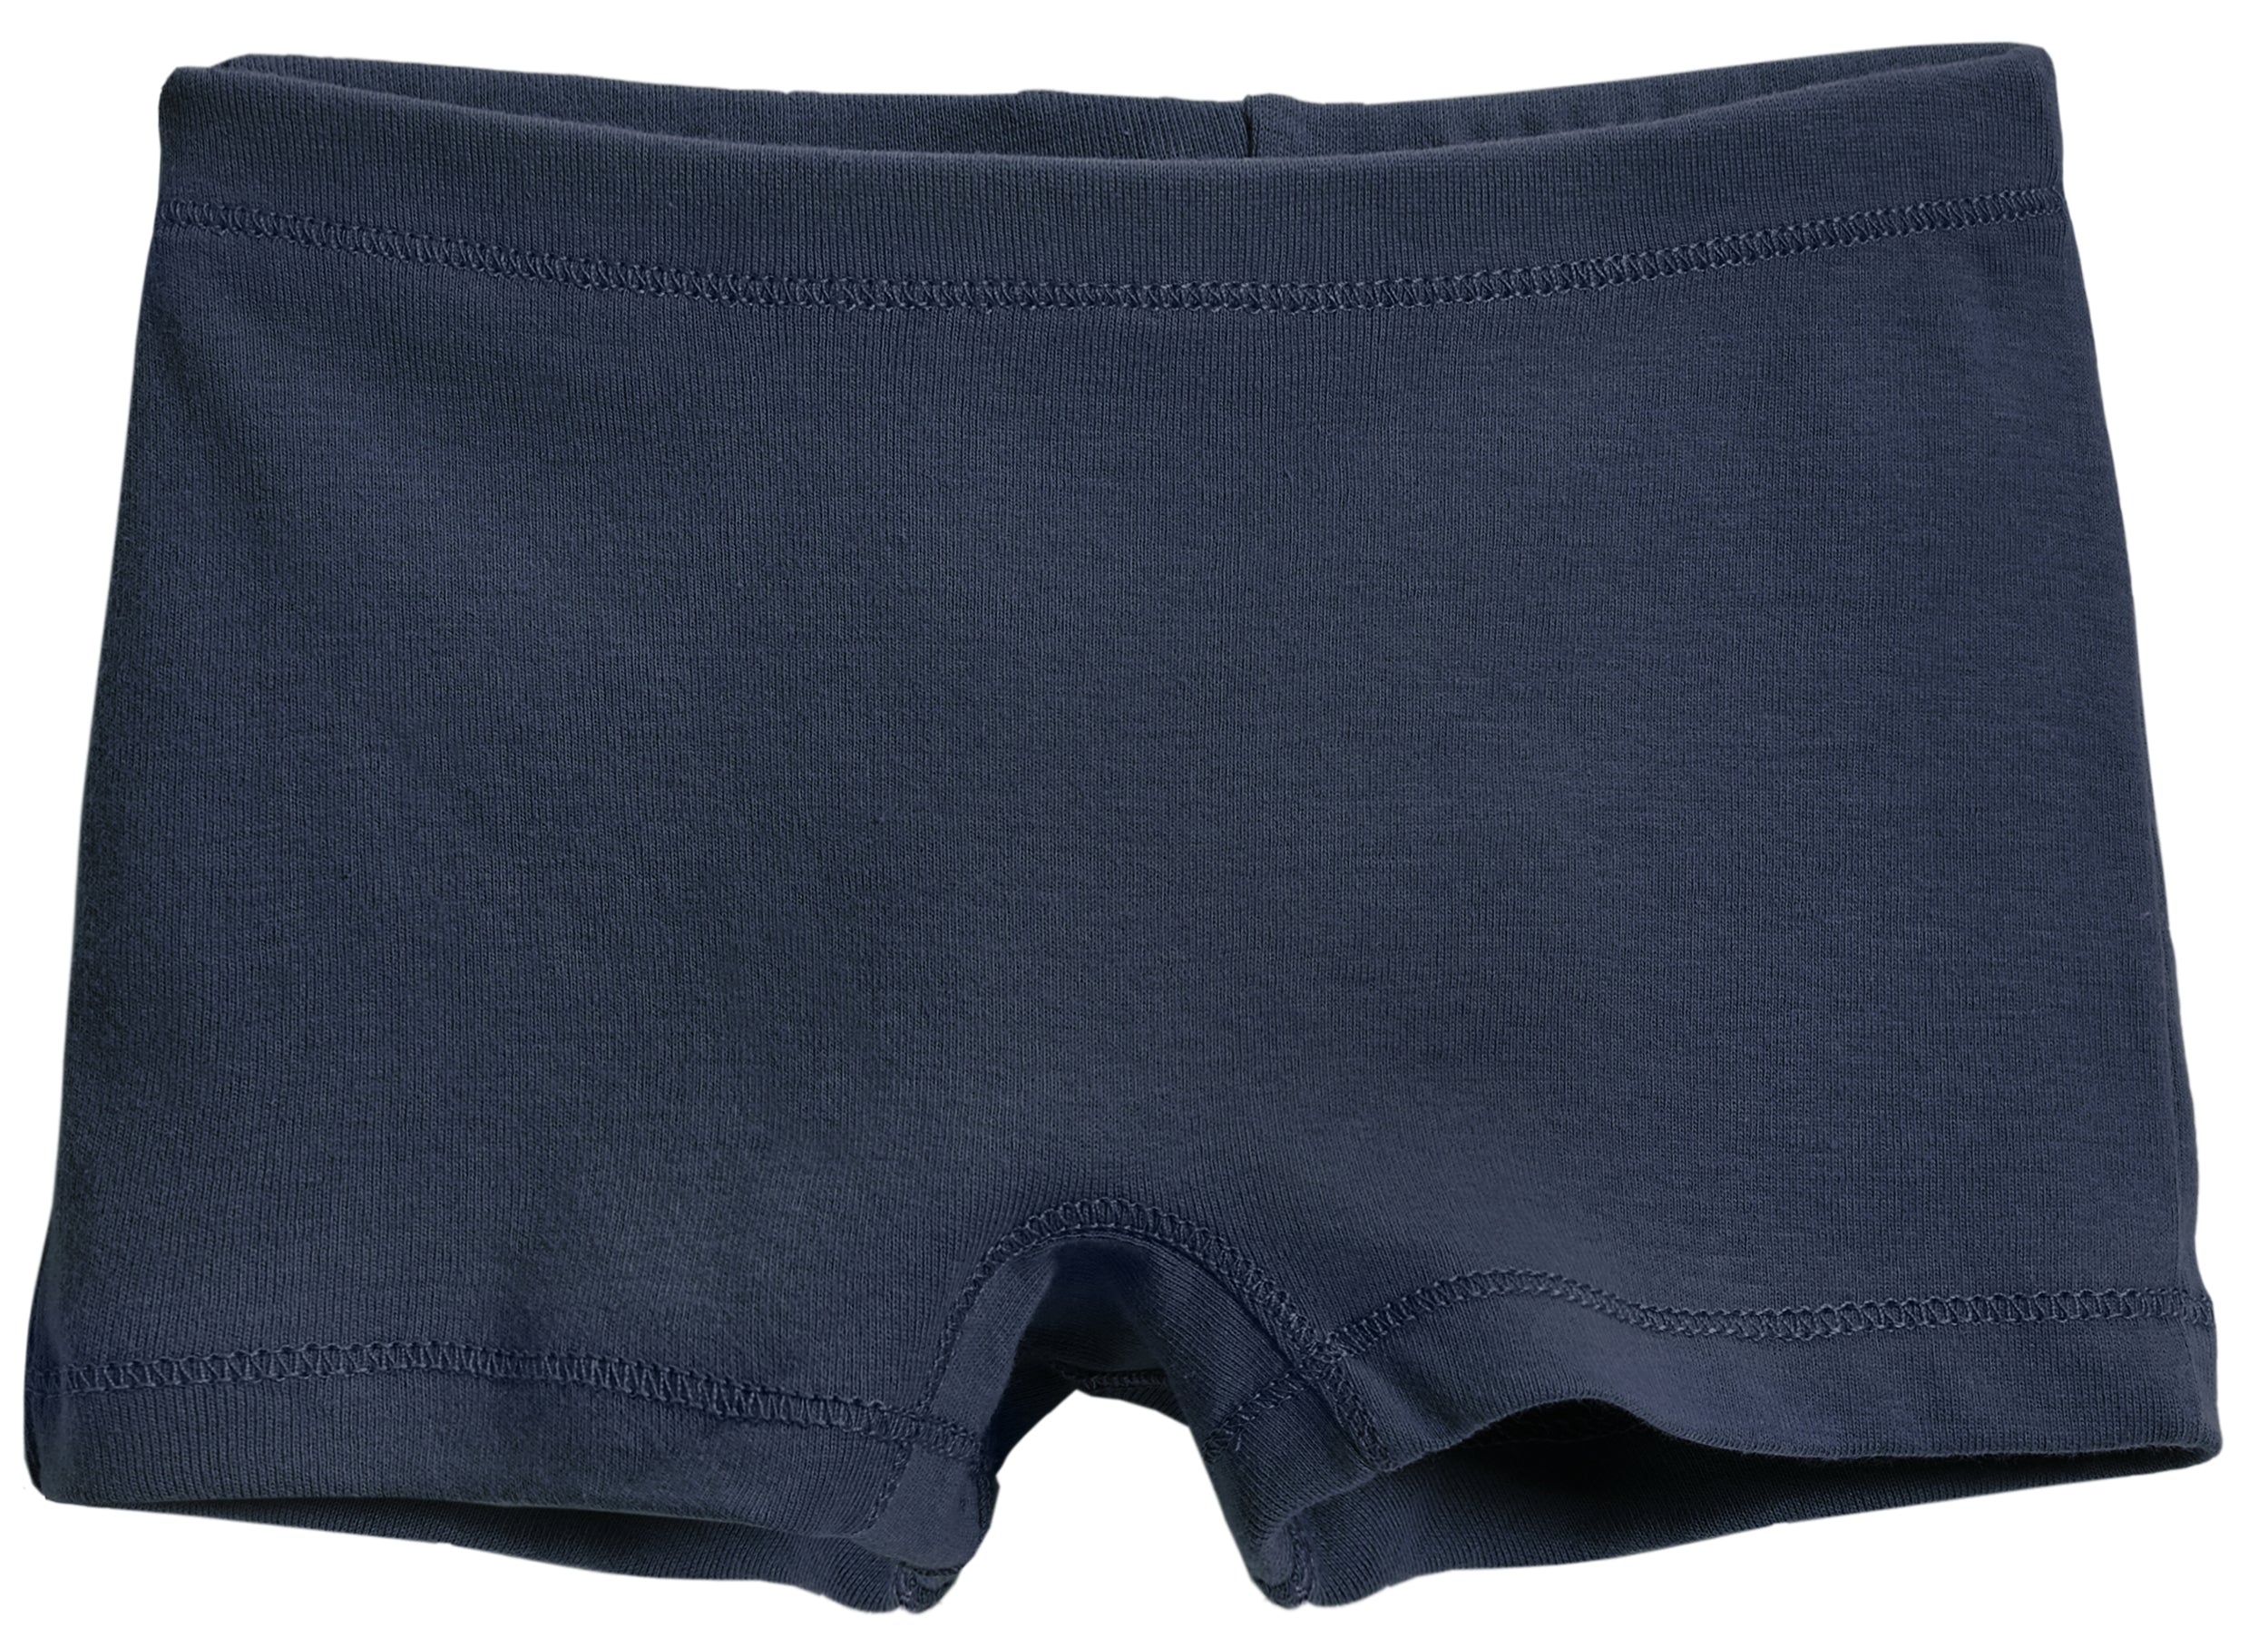 Best Deal for Family Feeling Little Girls Underwears Soft 100